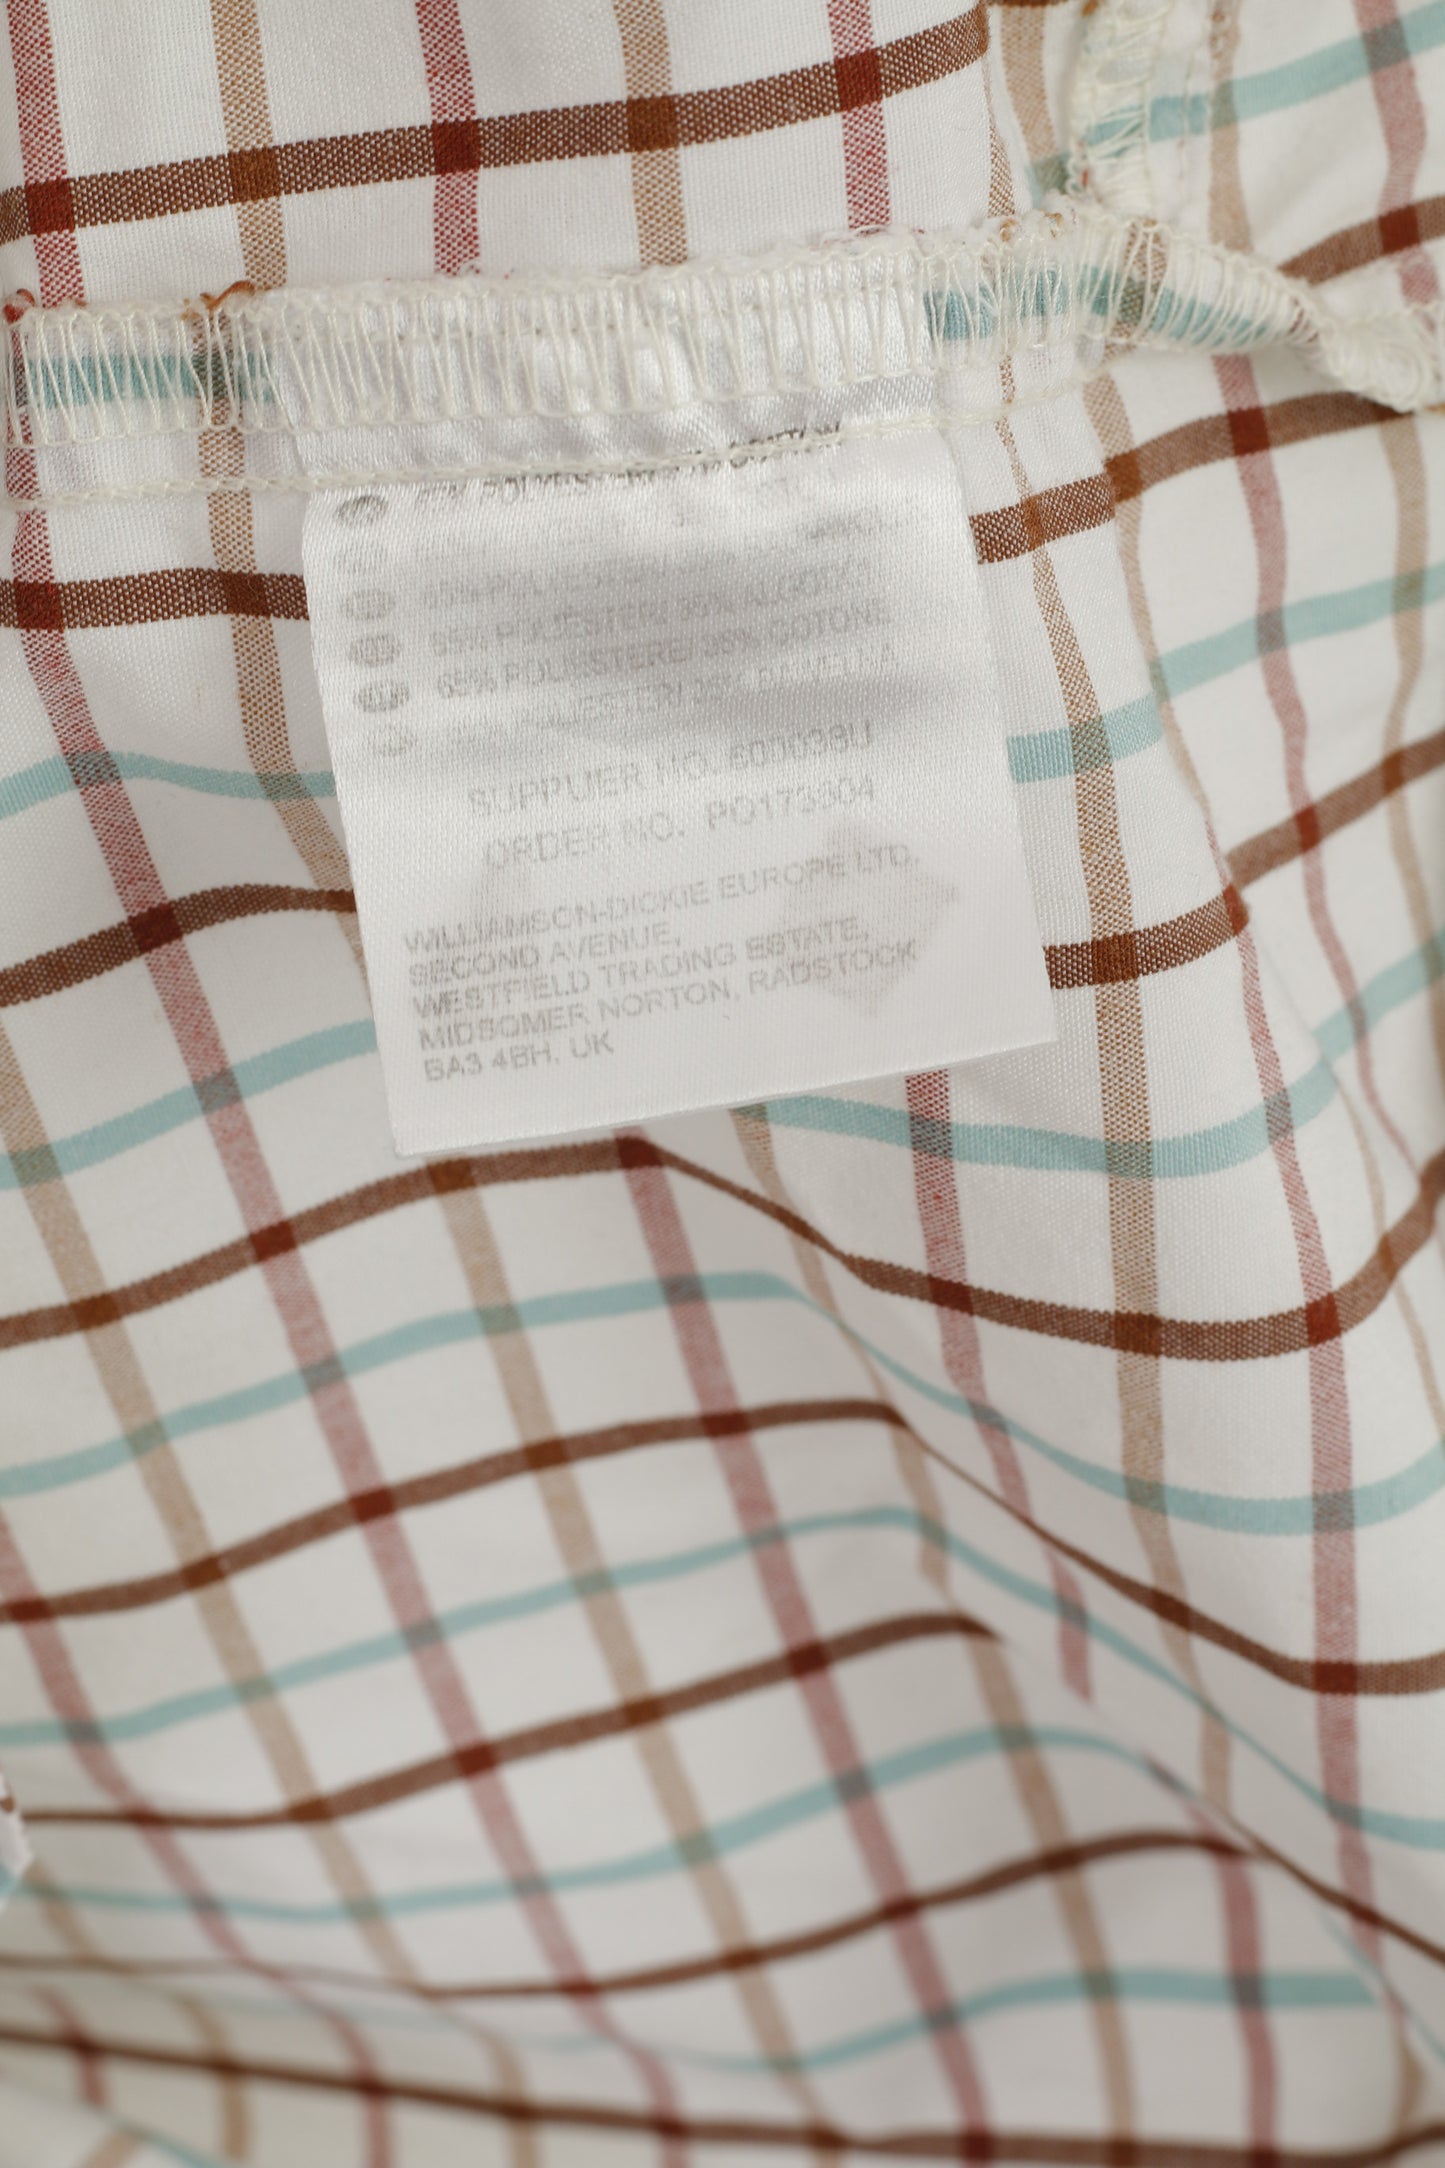 Dickies Men XL Casual Shirt Beige Checkered Cotton Blend Pocket Short Sleeve Top